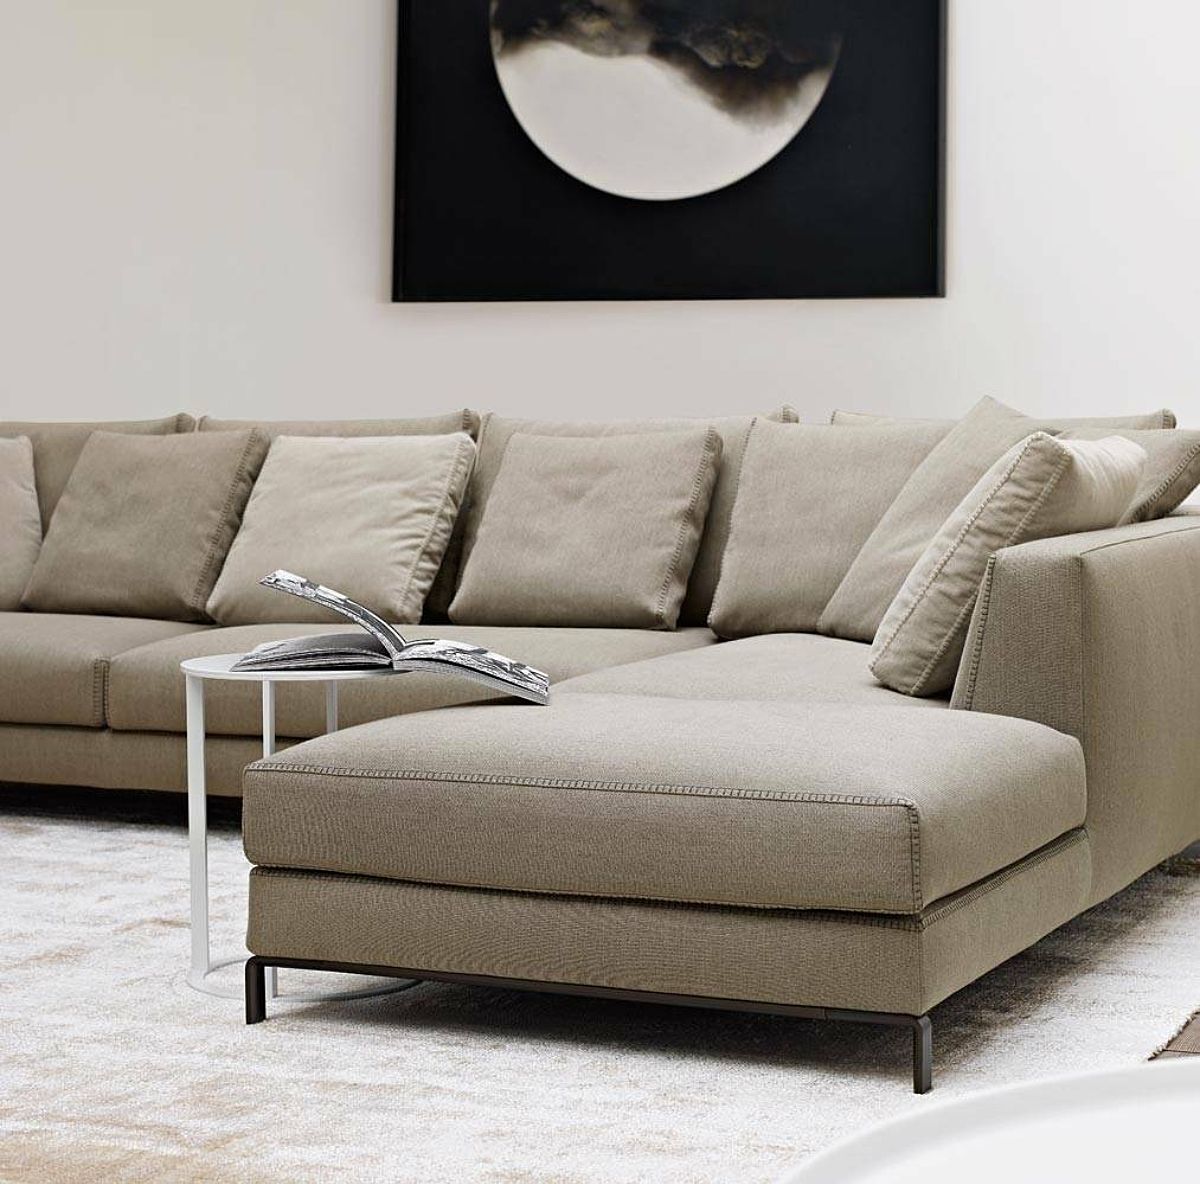 Ontdek de mogelijkheden van de Ray sofa van B&B Italia in Classo showroom